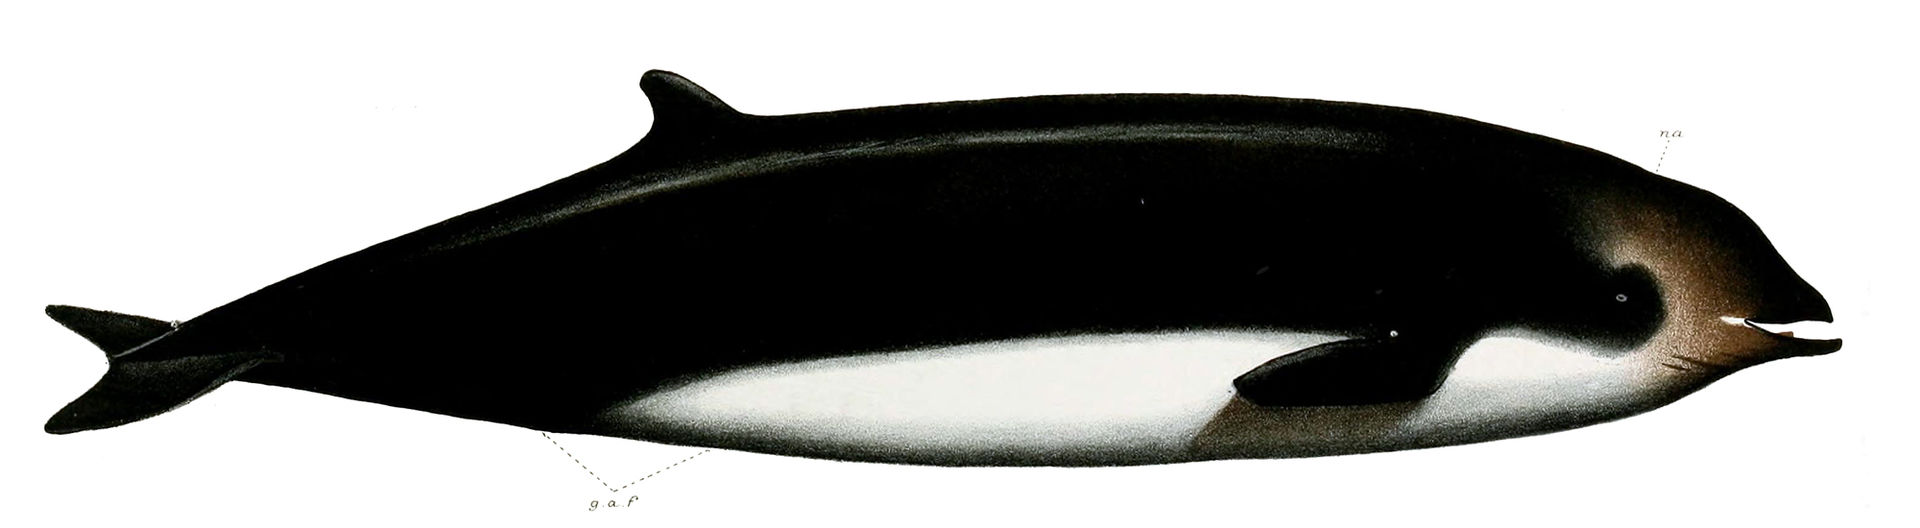 Baleine de Cuvier - illustration